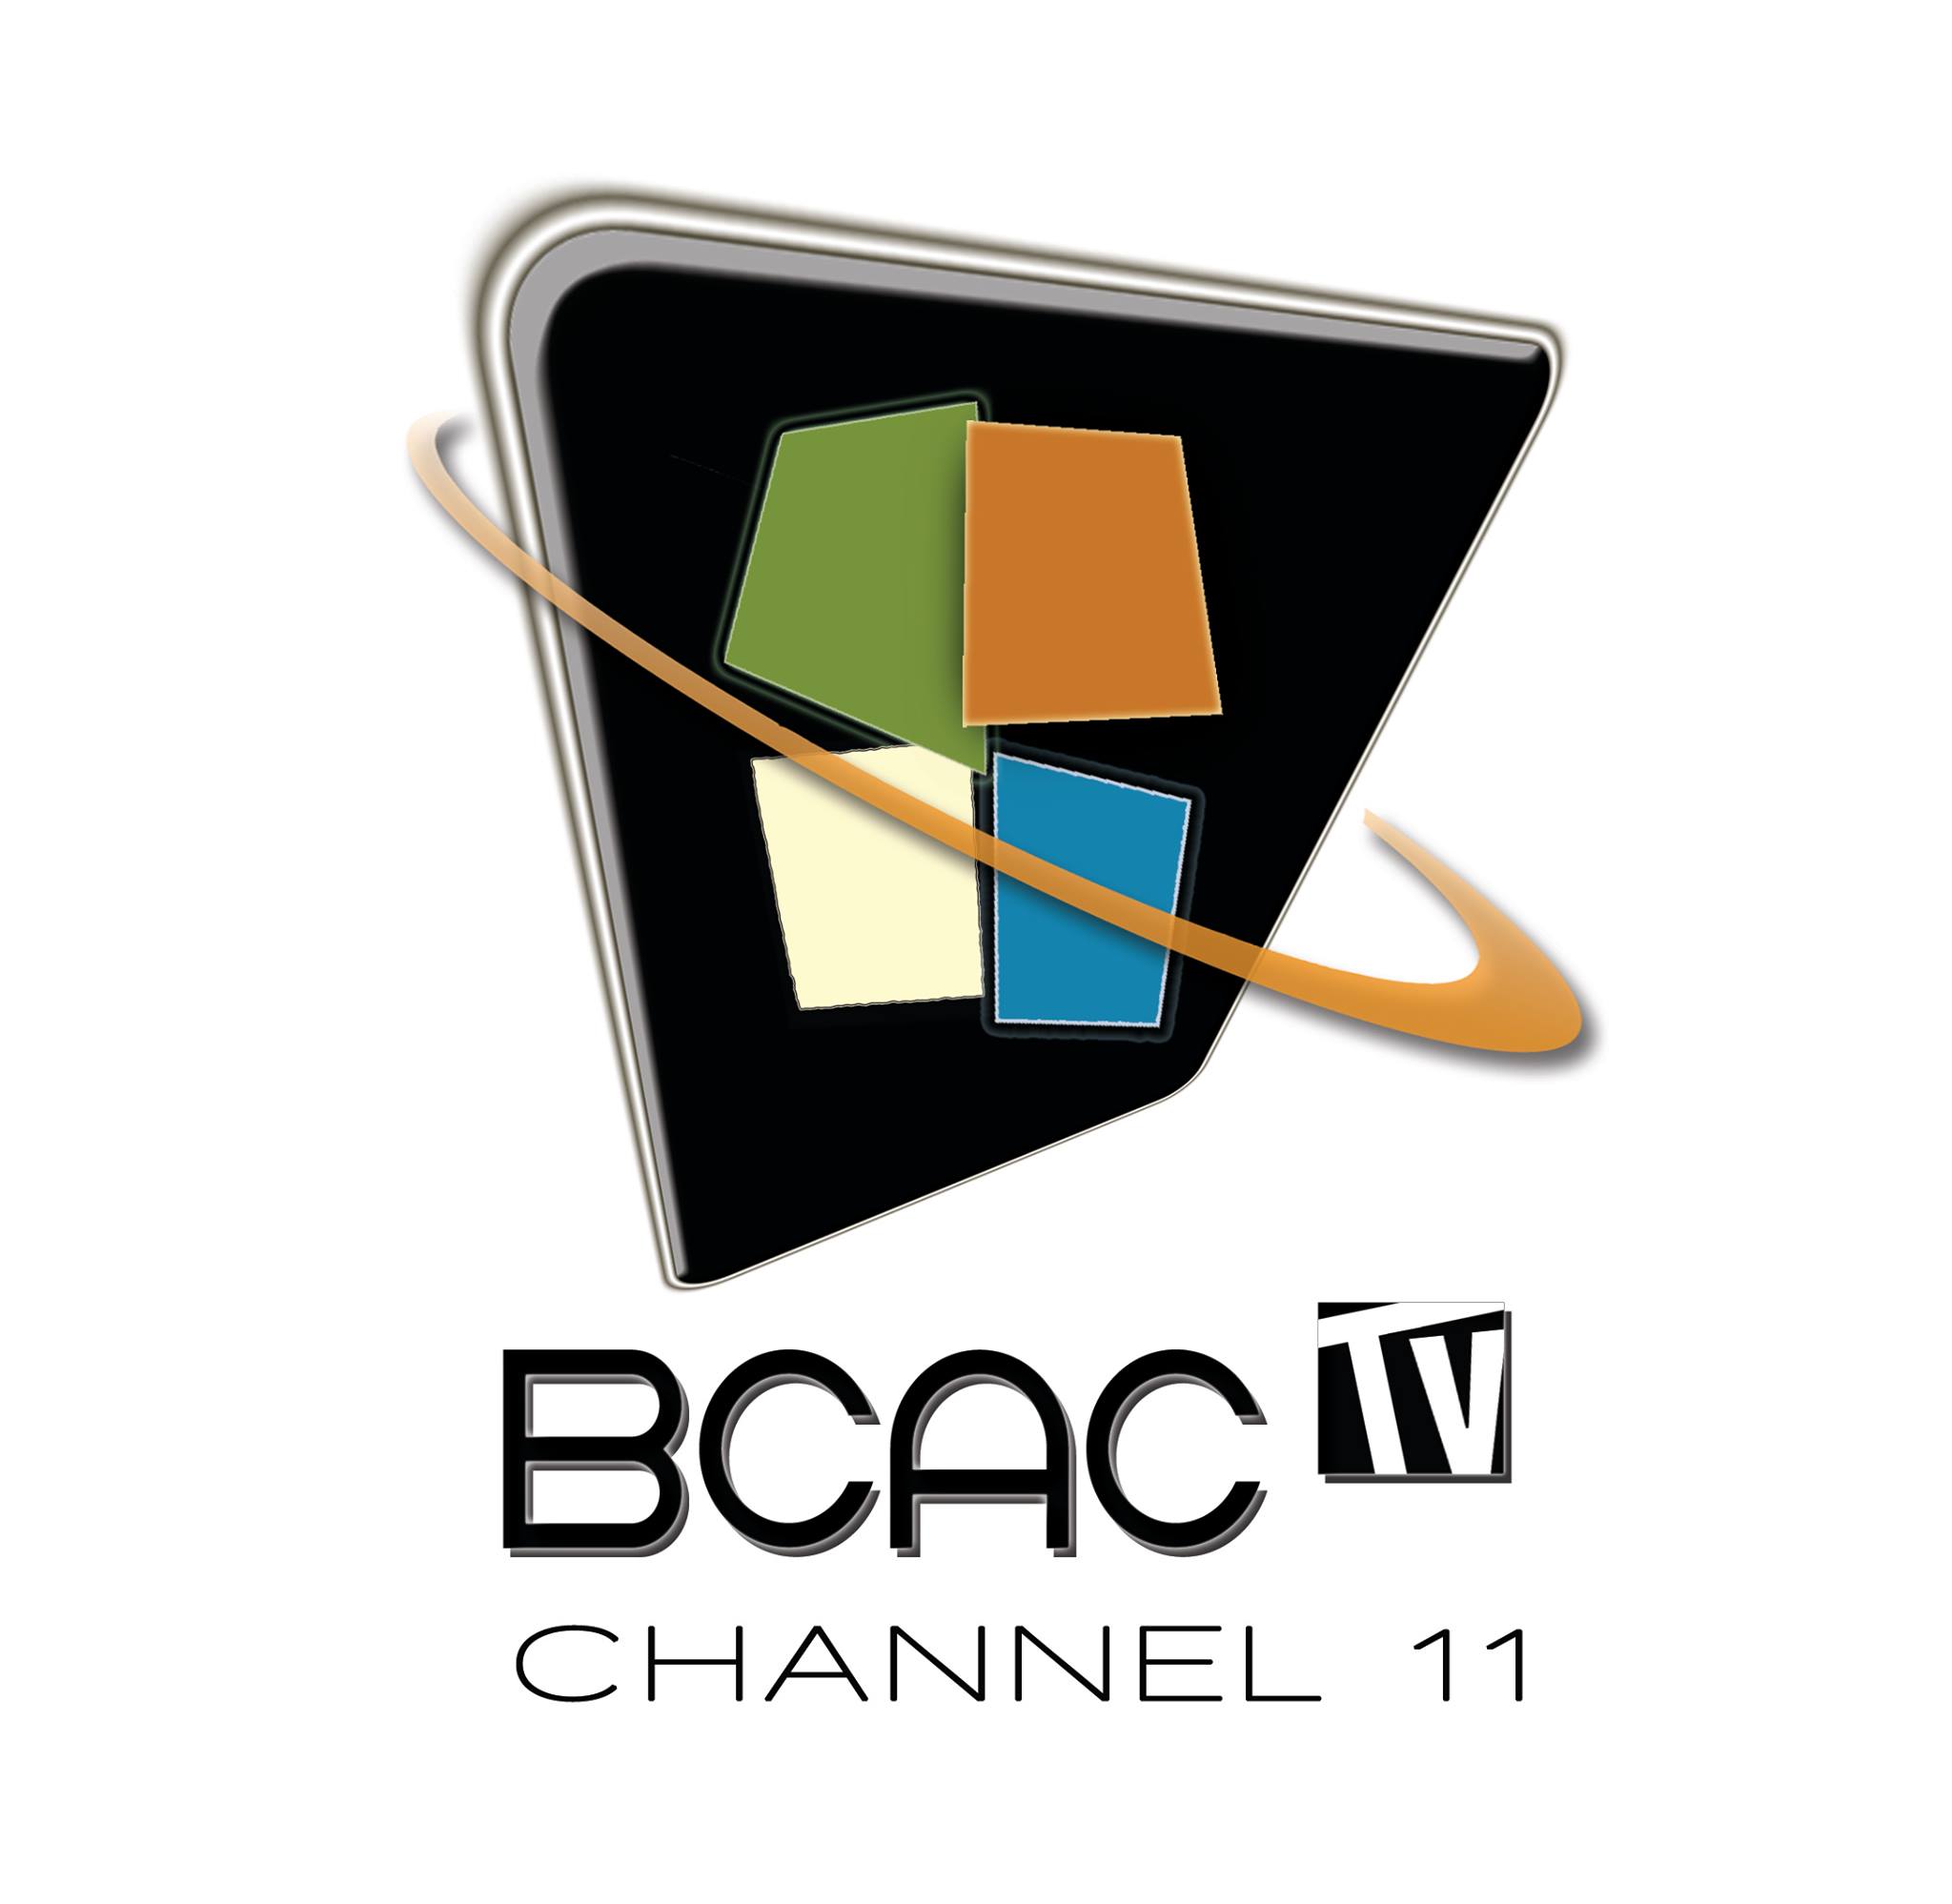 BCAC.tv